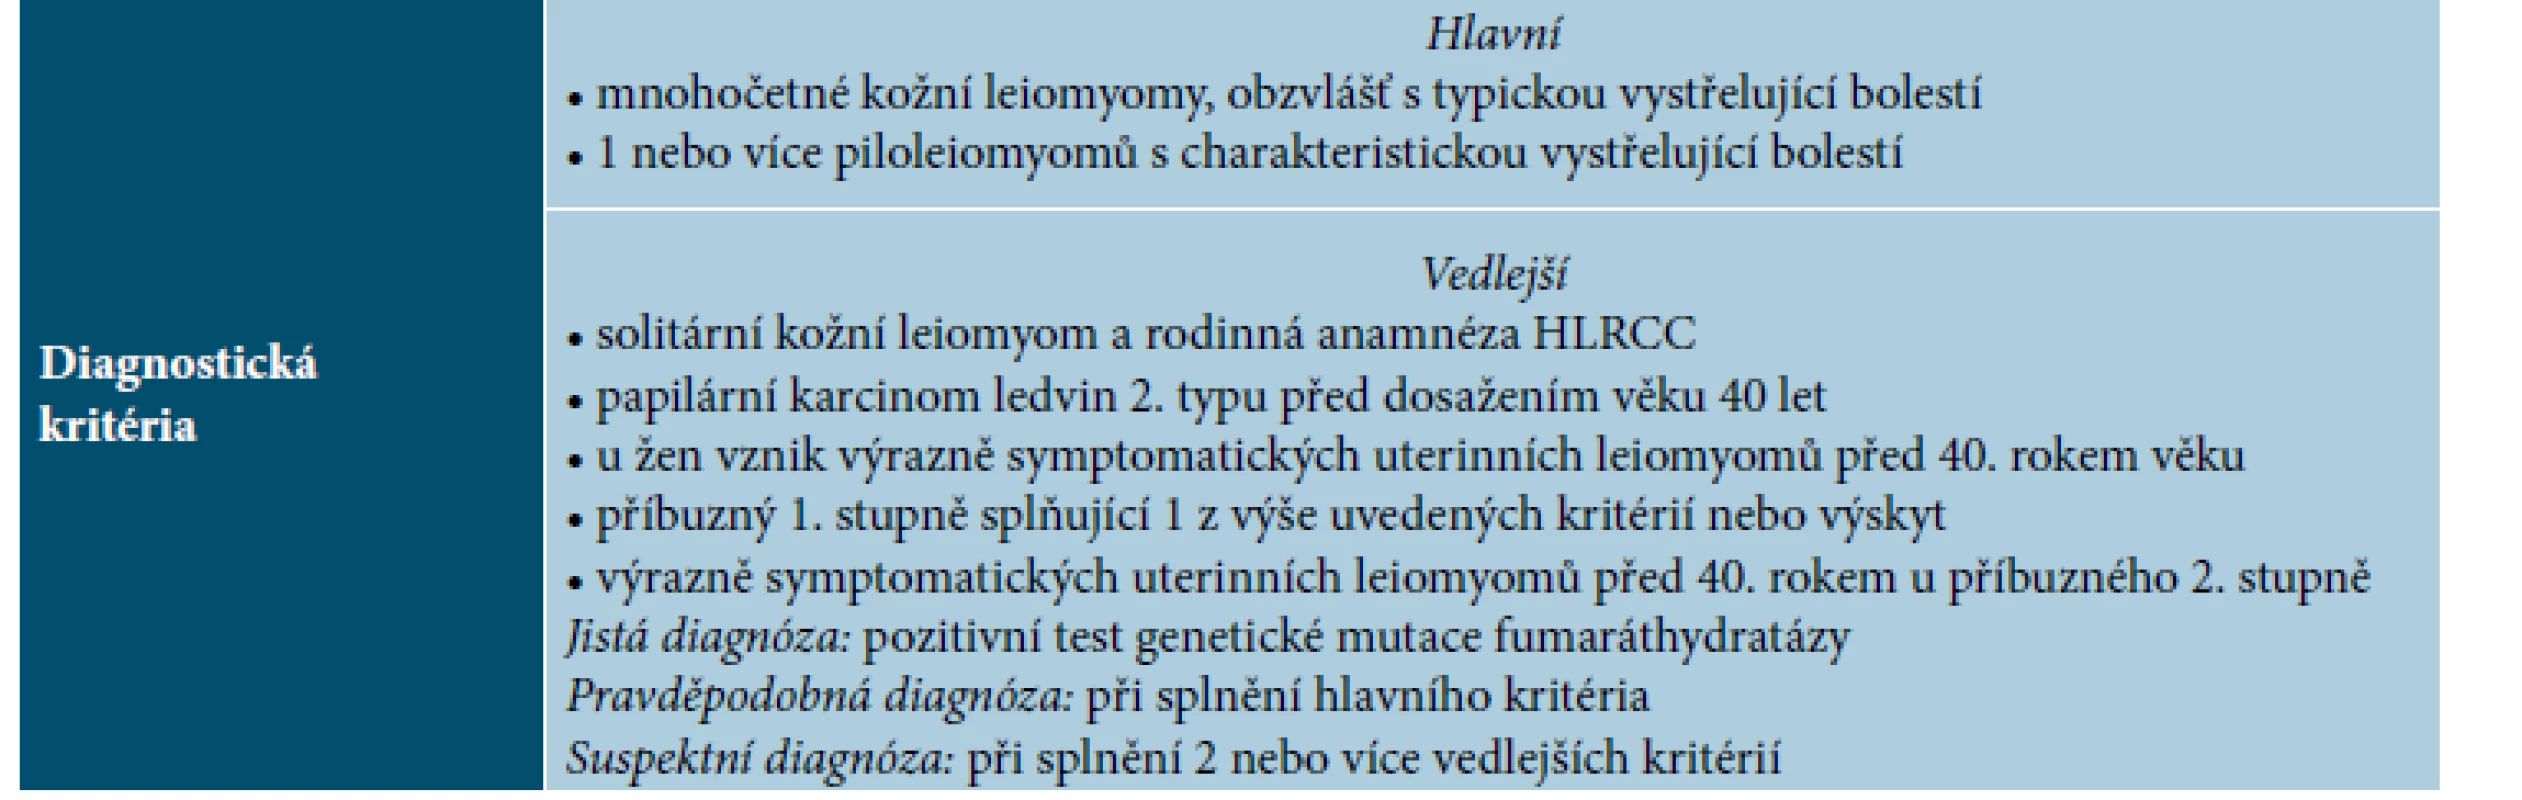 Diagnostická kritéria syndromu hereditární leiomyomatózy a renálního karcinomu – HLRCC